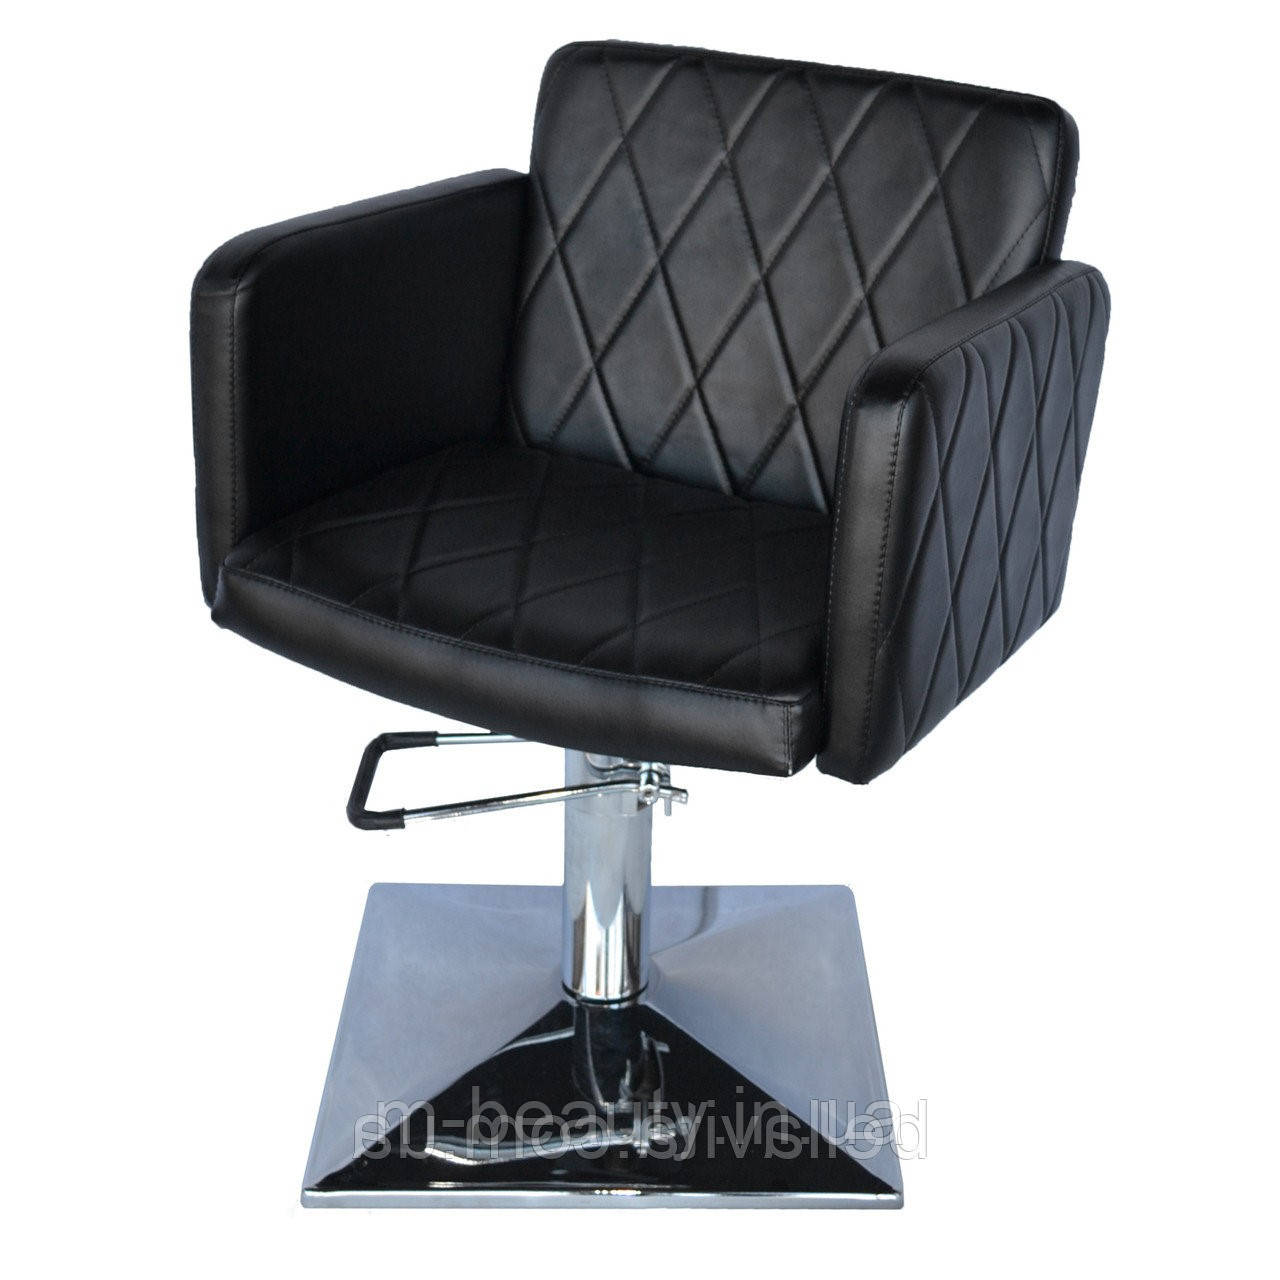 Перукарське крісло для салонів краси Валентио Люкс (Valentio Lux) крісла для перукарень Квадрат опуклий, Гідравліка